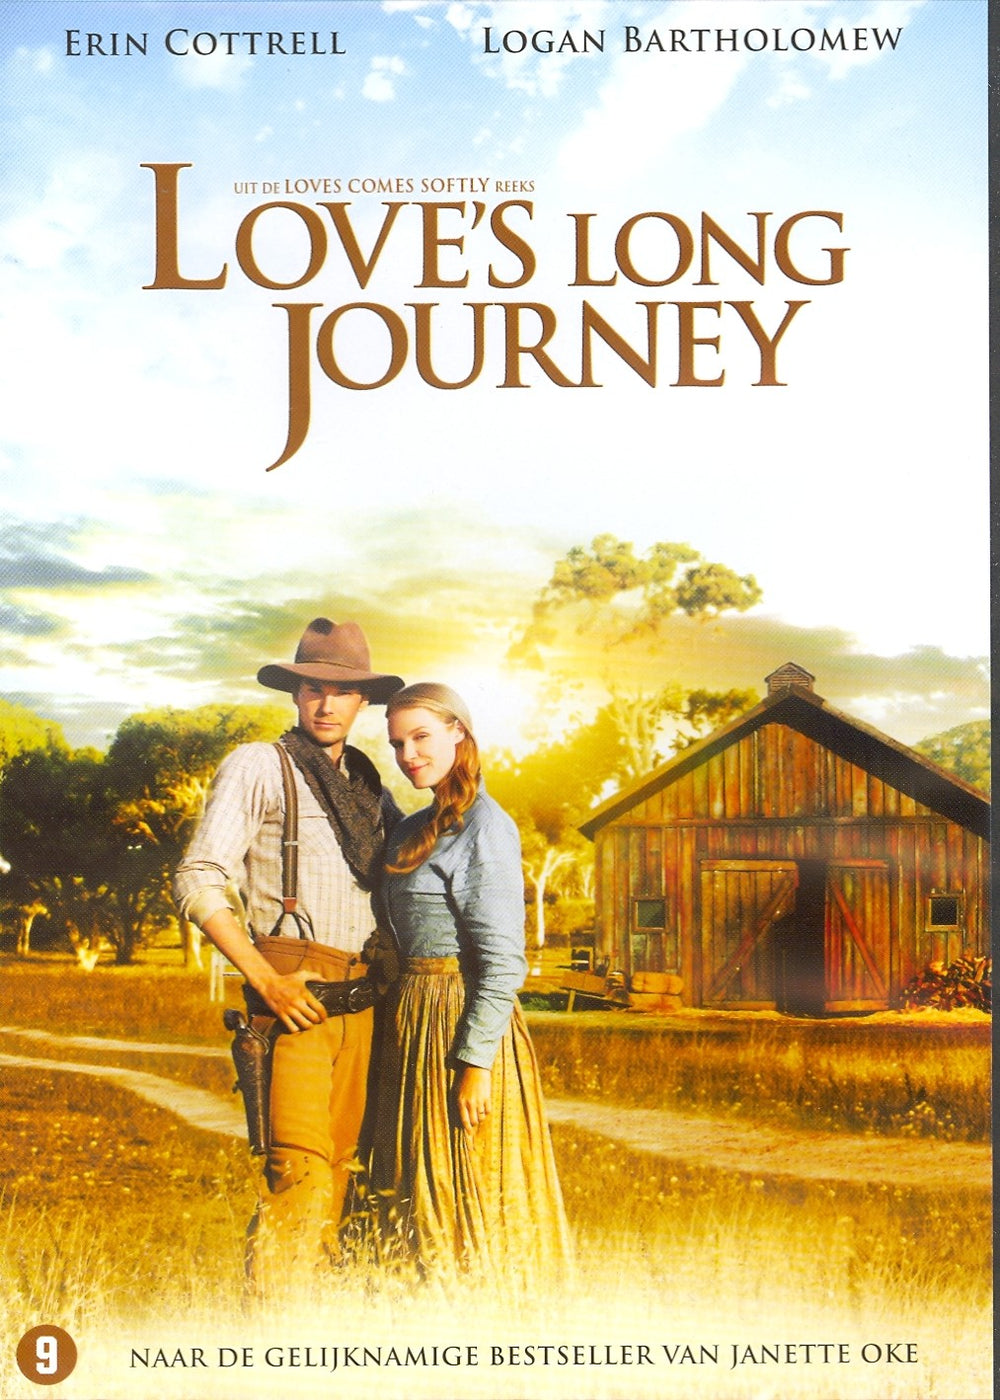 Love's long journey 3 (DVD)